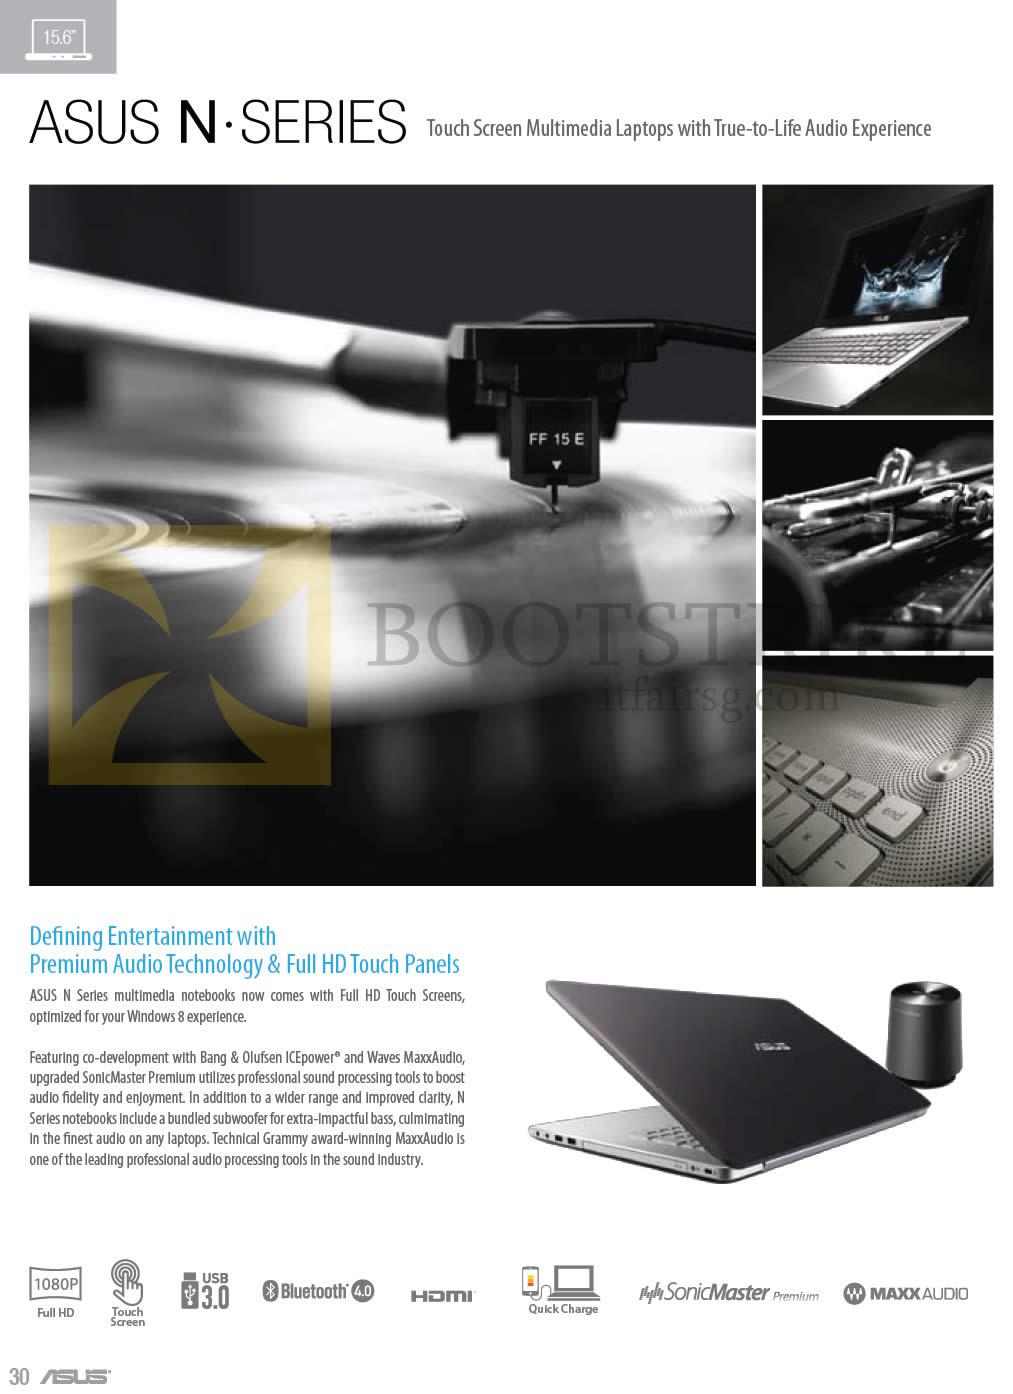 COMEX 2013 price list image brochure of ASUS Notebooks N Series